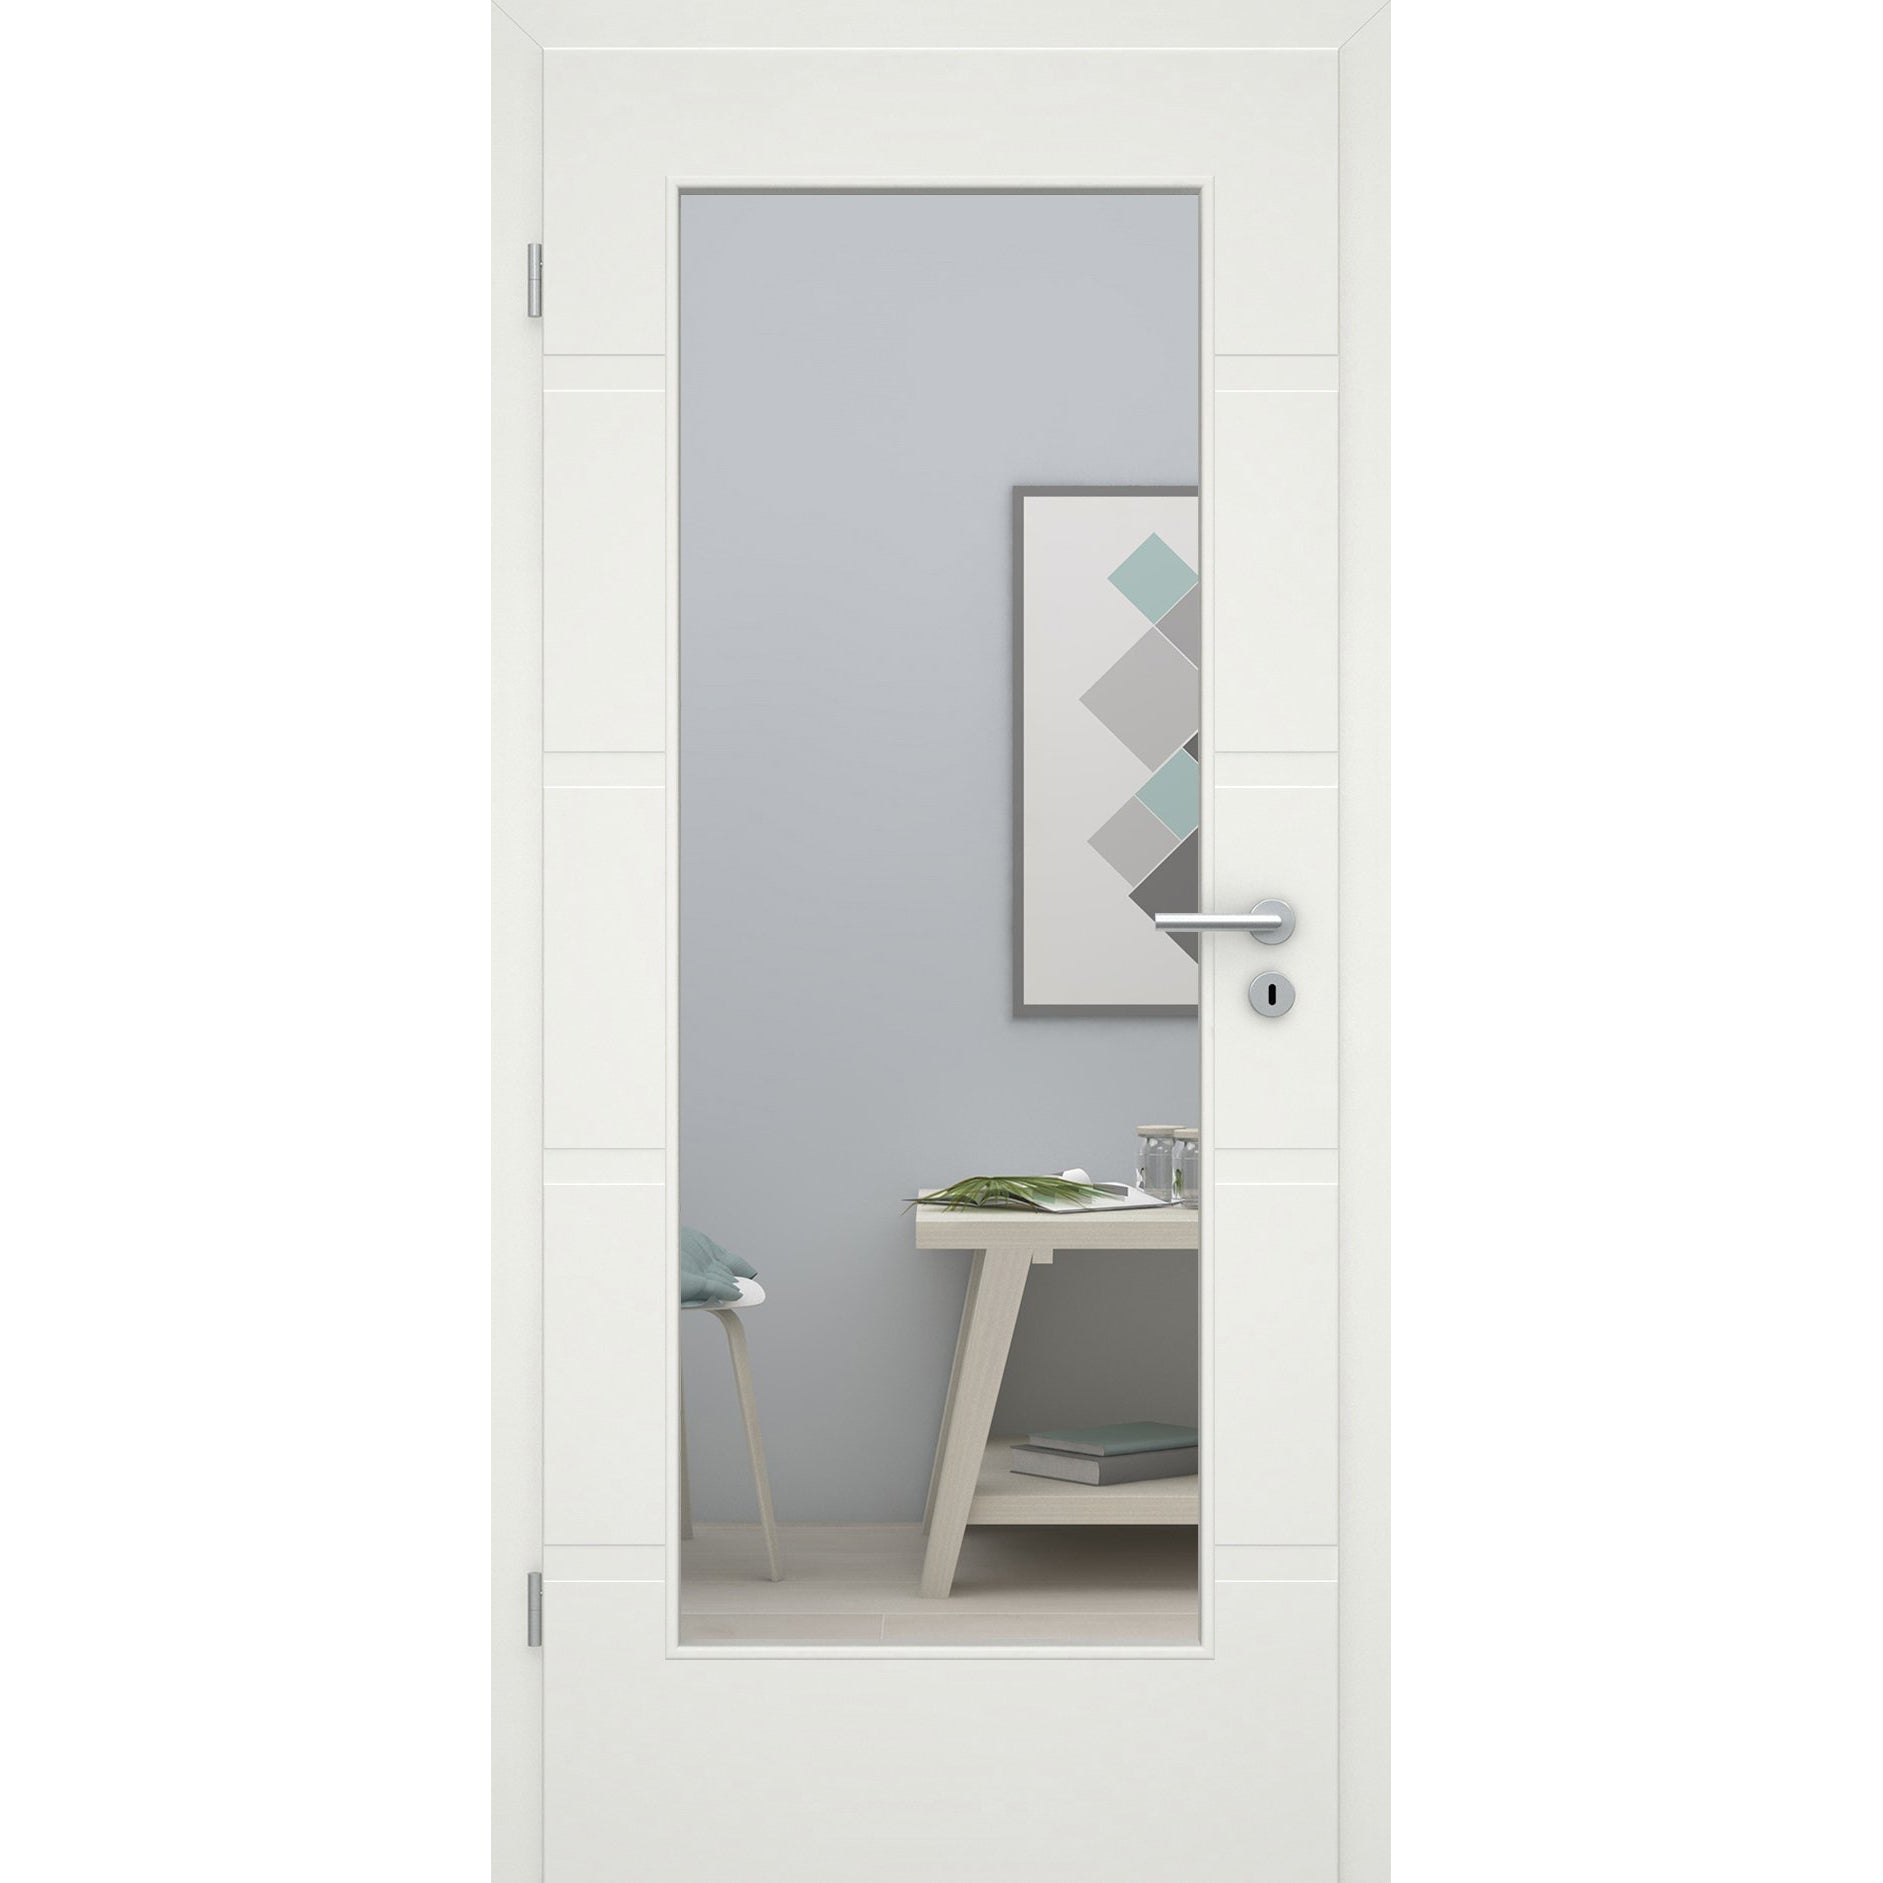 Zimmertür mit Lichtausschnitt soft-weiß 4 breite Rillen Eckkante - Modell Designtür QB41LA